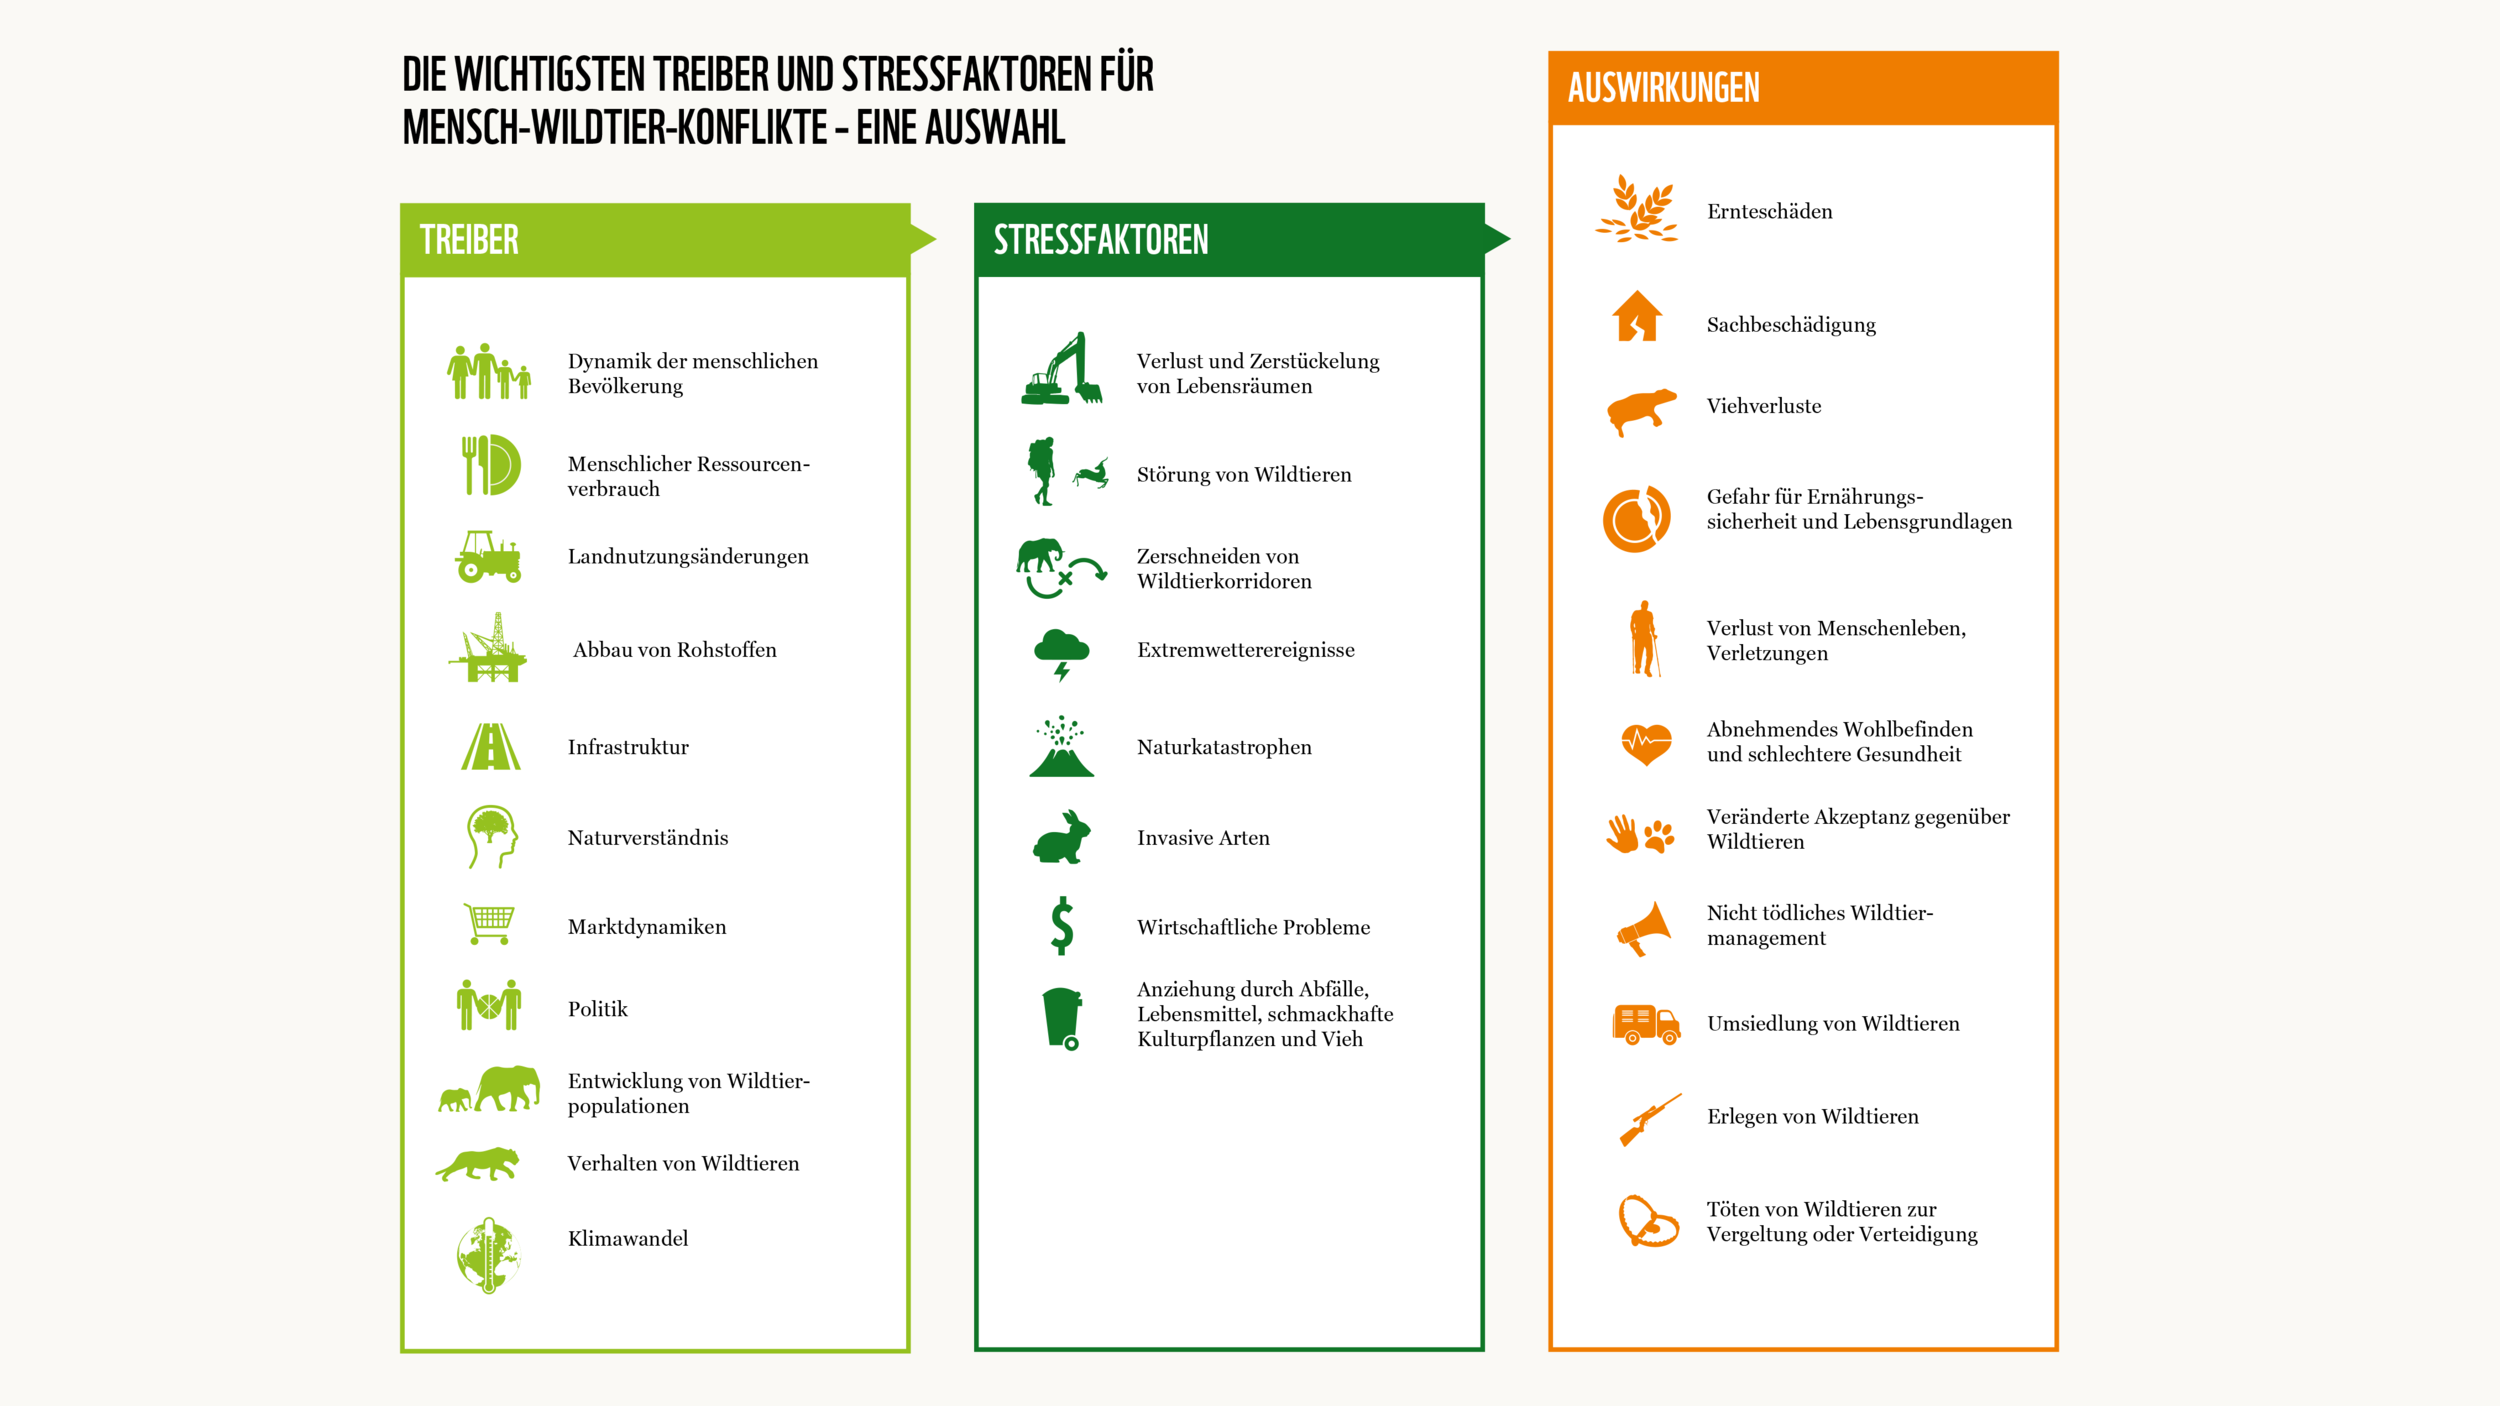 Treiber und Stressfaktoren von Mensch-Wildtier-Konflikten © WWF